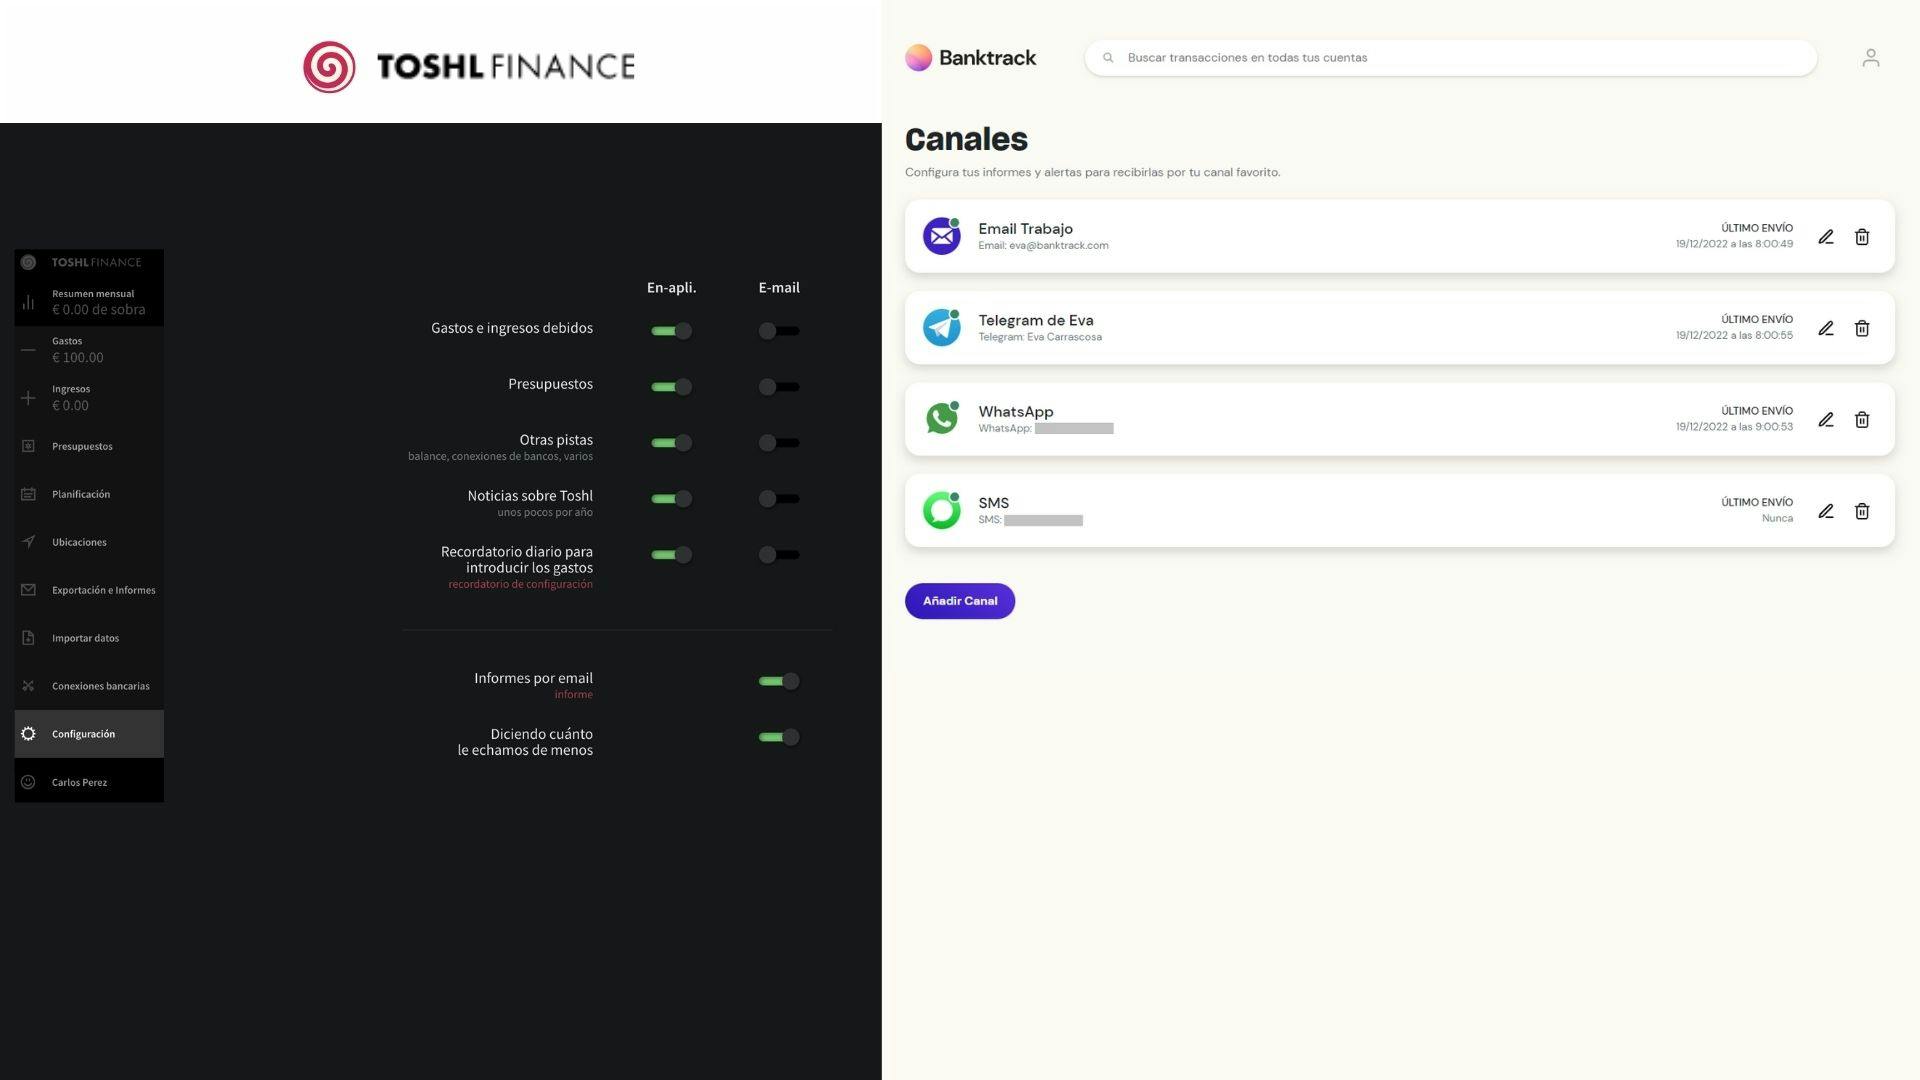 Capturas de las herramientas Toshl y Banktrack, de izquierda a derecha. Imagen de los ajustes de notificaciones